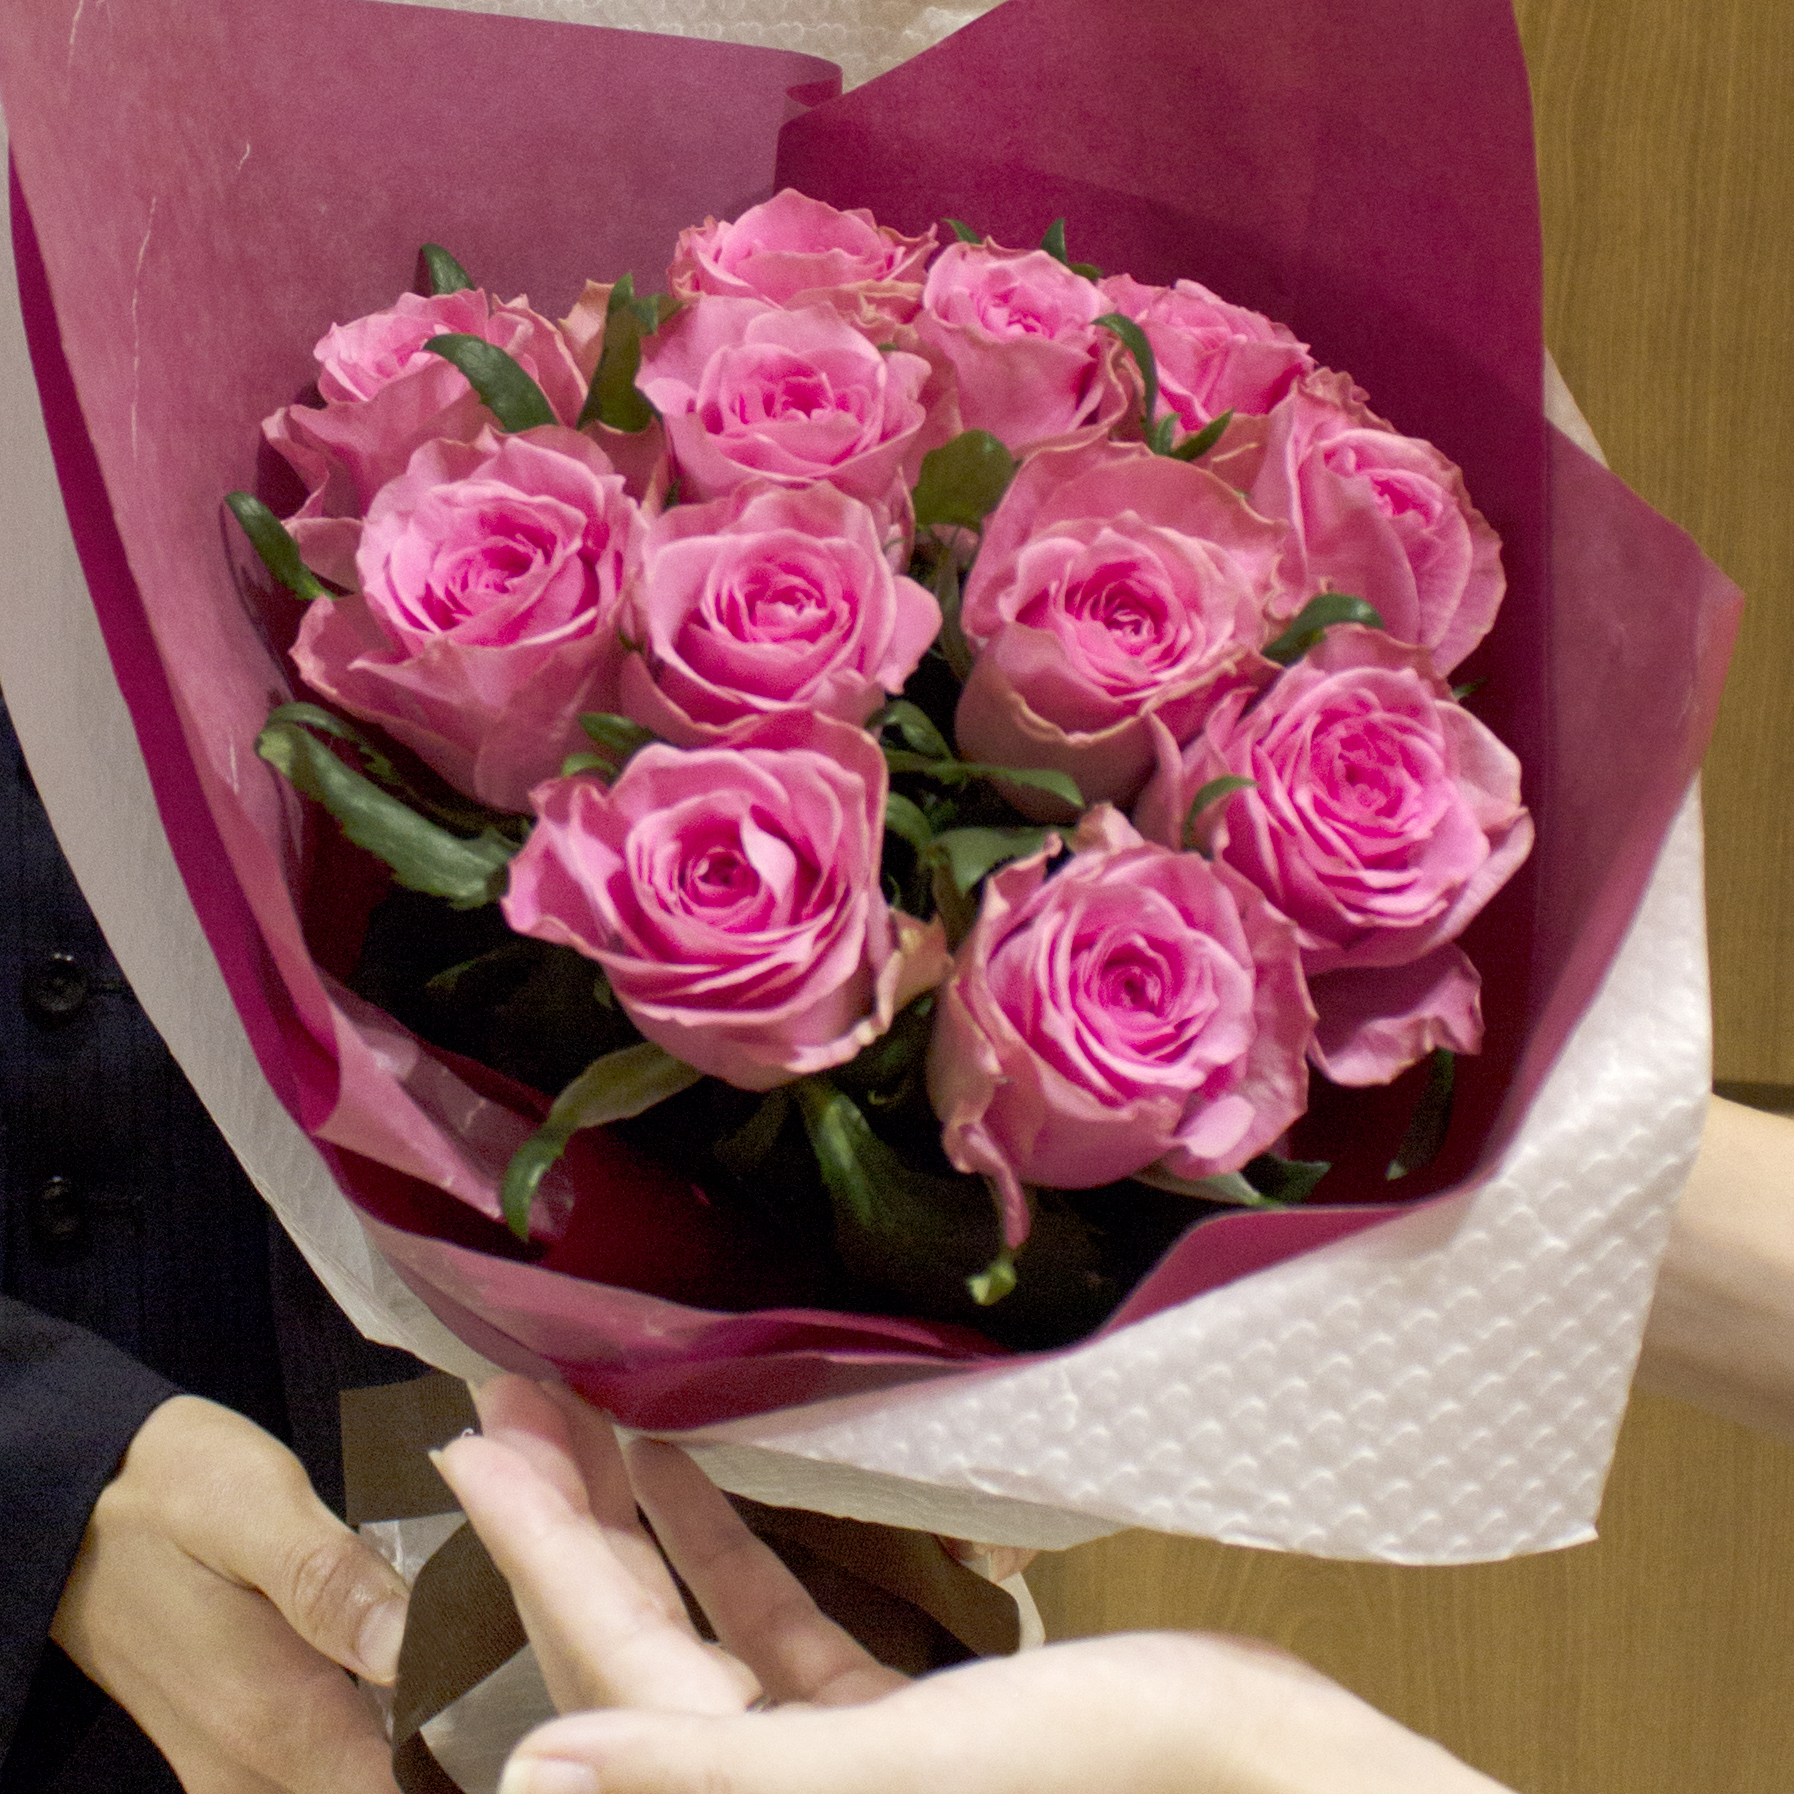 ダズンローズ 12本の薔薇の花束 ピンク Fresh Flower Pink ピンクバラ バラ 生花 バラの花束 ピンクバラ 花束 ブーケ バラ ブーケ フラワーギフト専門のネットショップ Conoka Online Shop